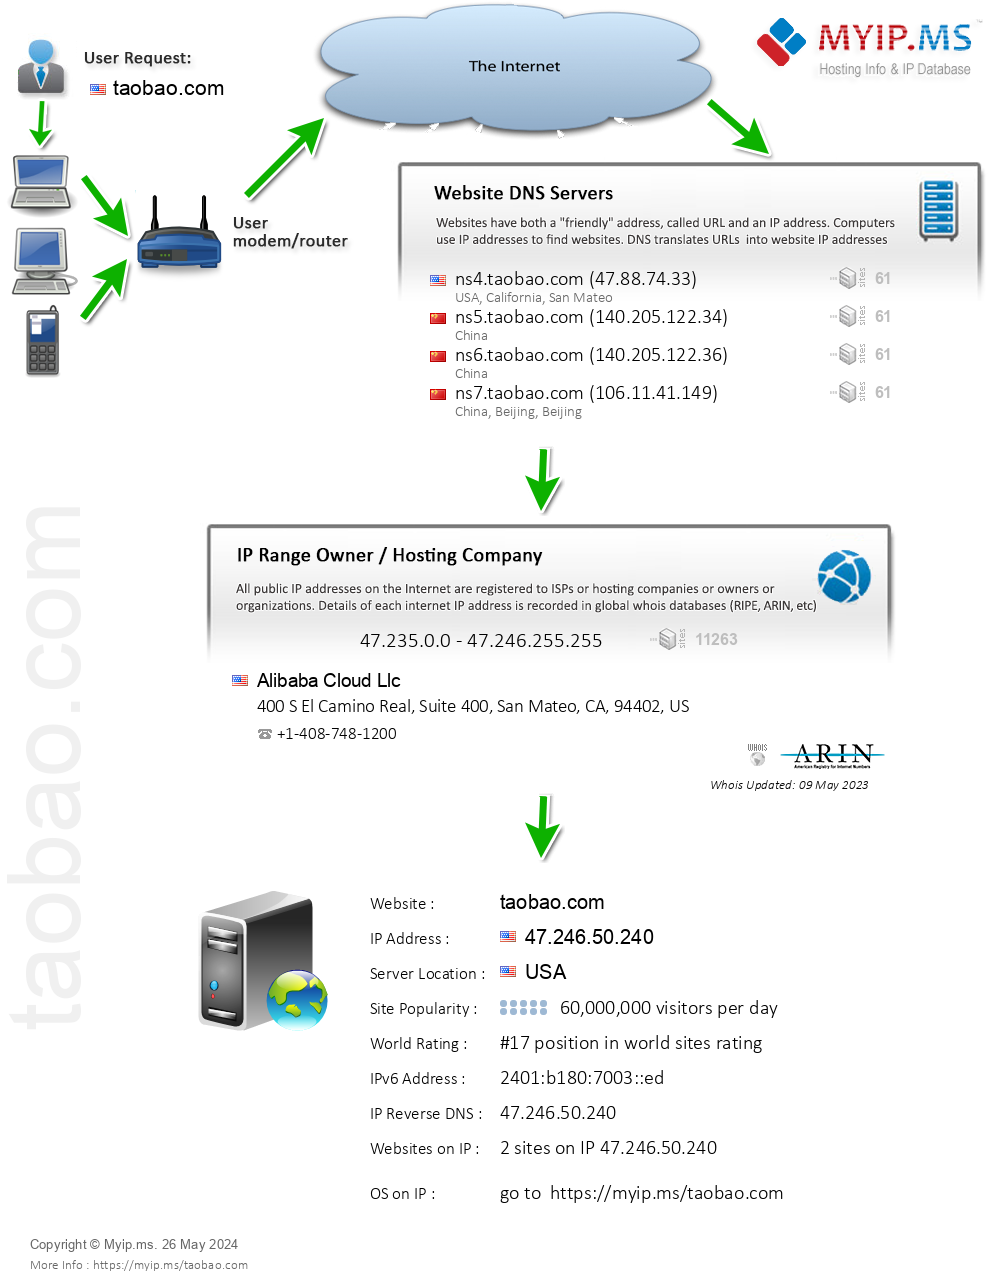 Taobao.com - Website Hosting Visual IP Diagram